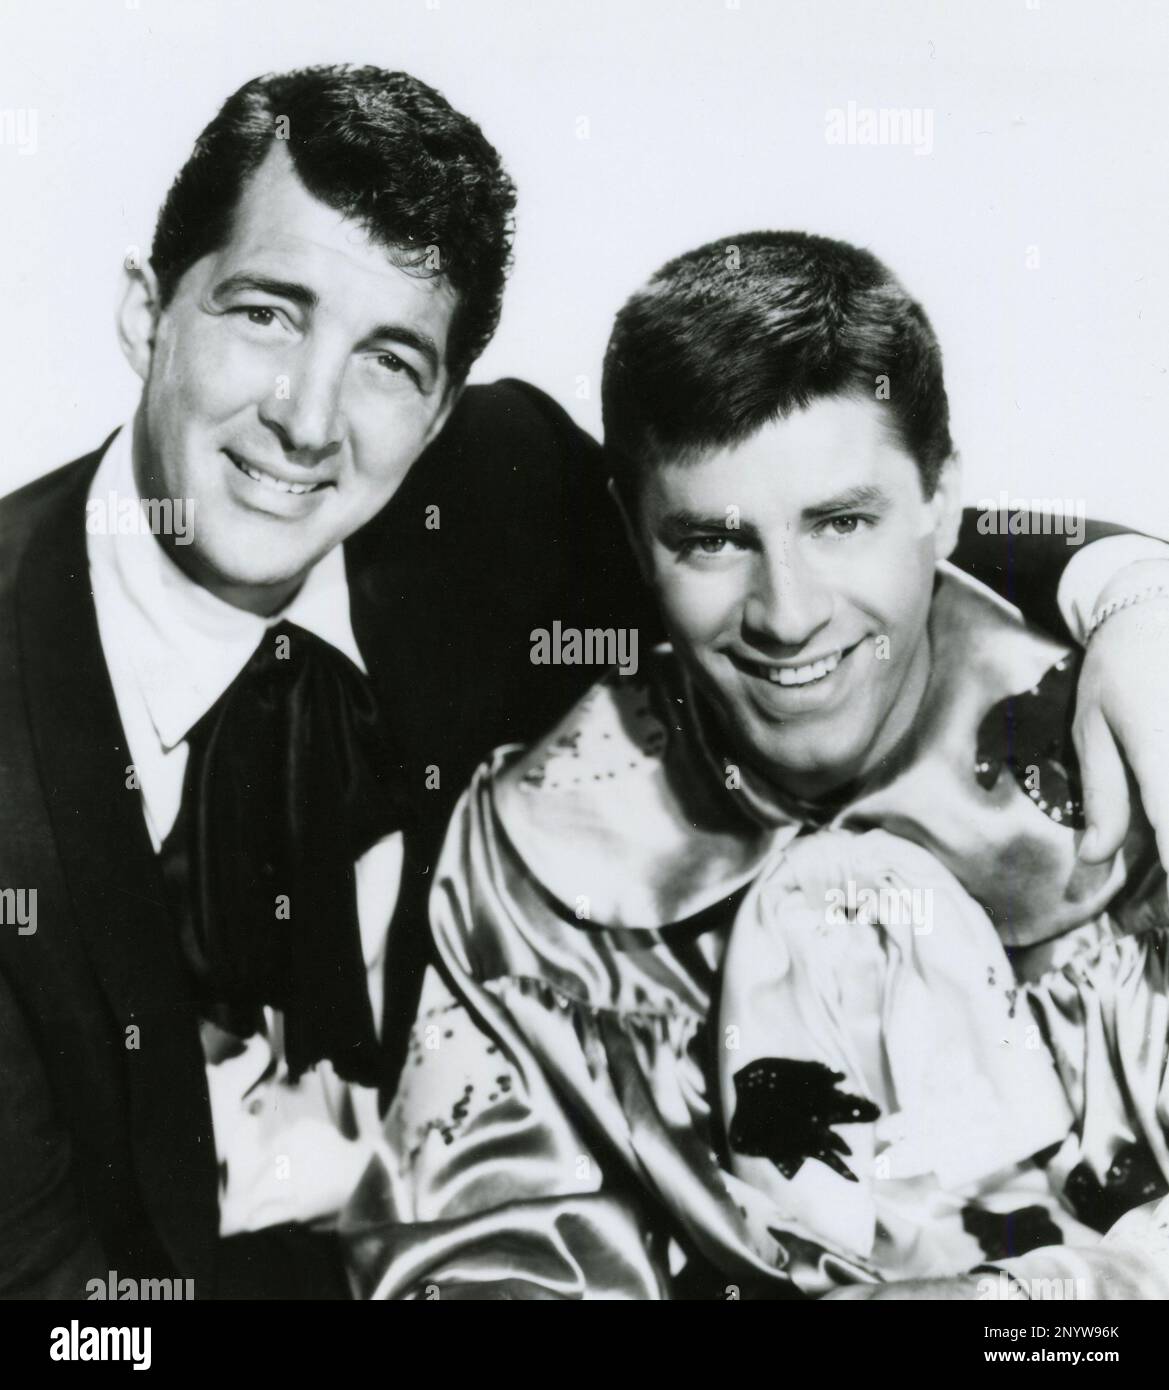 Les acteurs américains Dean Martin et Jerry Lewis dans le film artistes et modèles, USA 1955 Banque D'Images